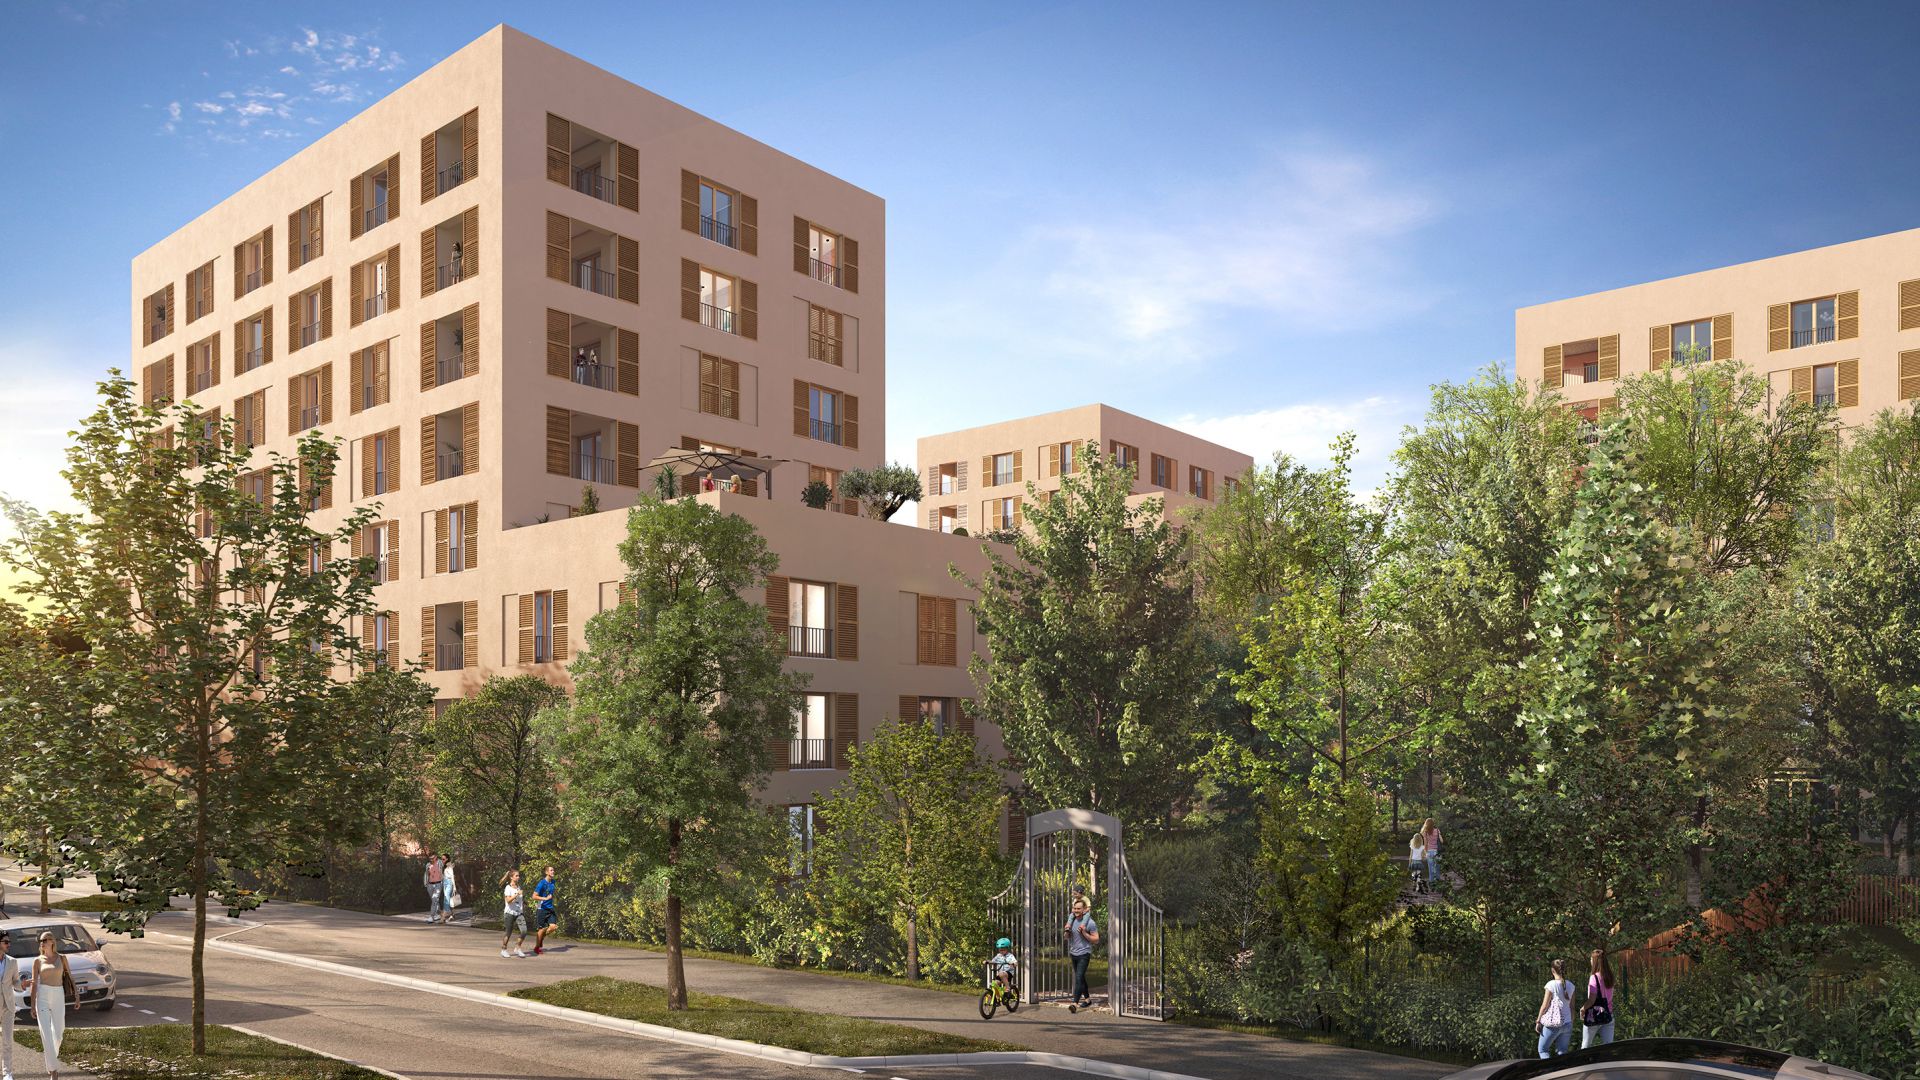 Greencity immobilier - achat appartements neufs du T1 au T5 - Résidence Révélation - 31400 Toulouse  